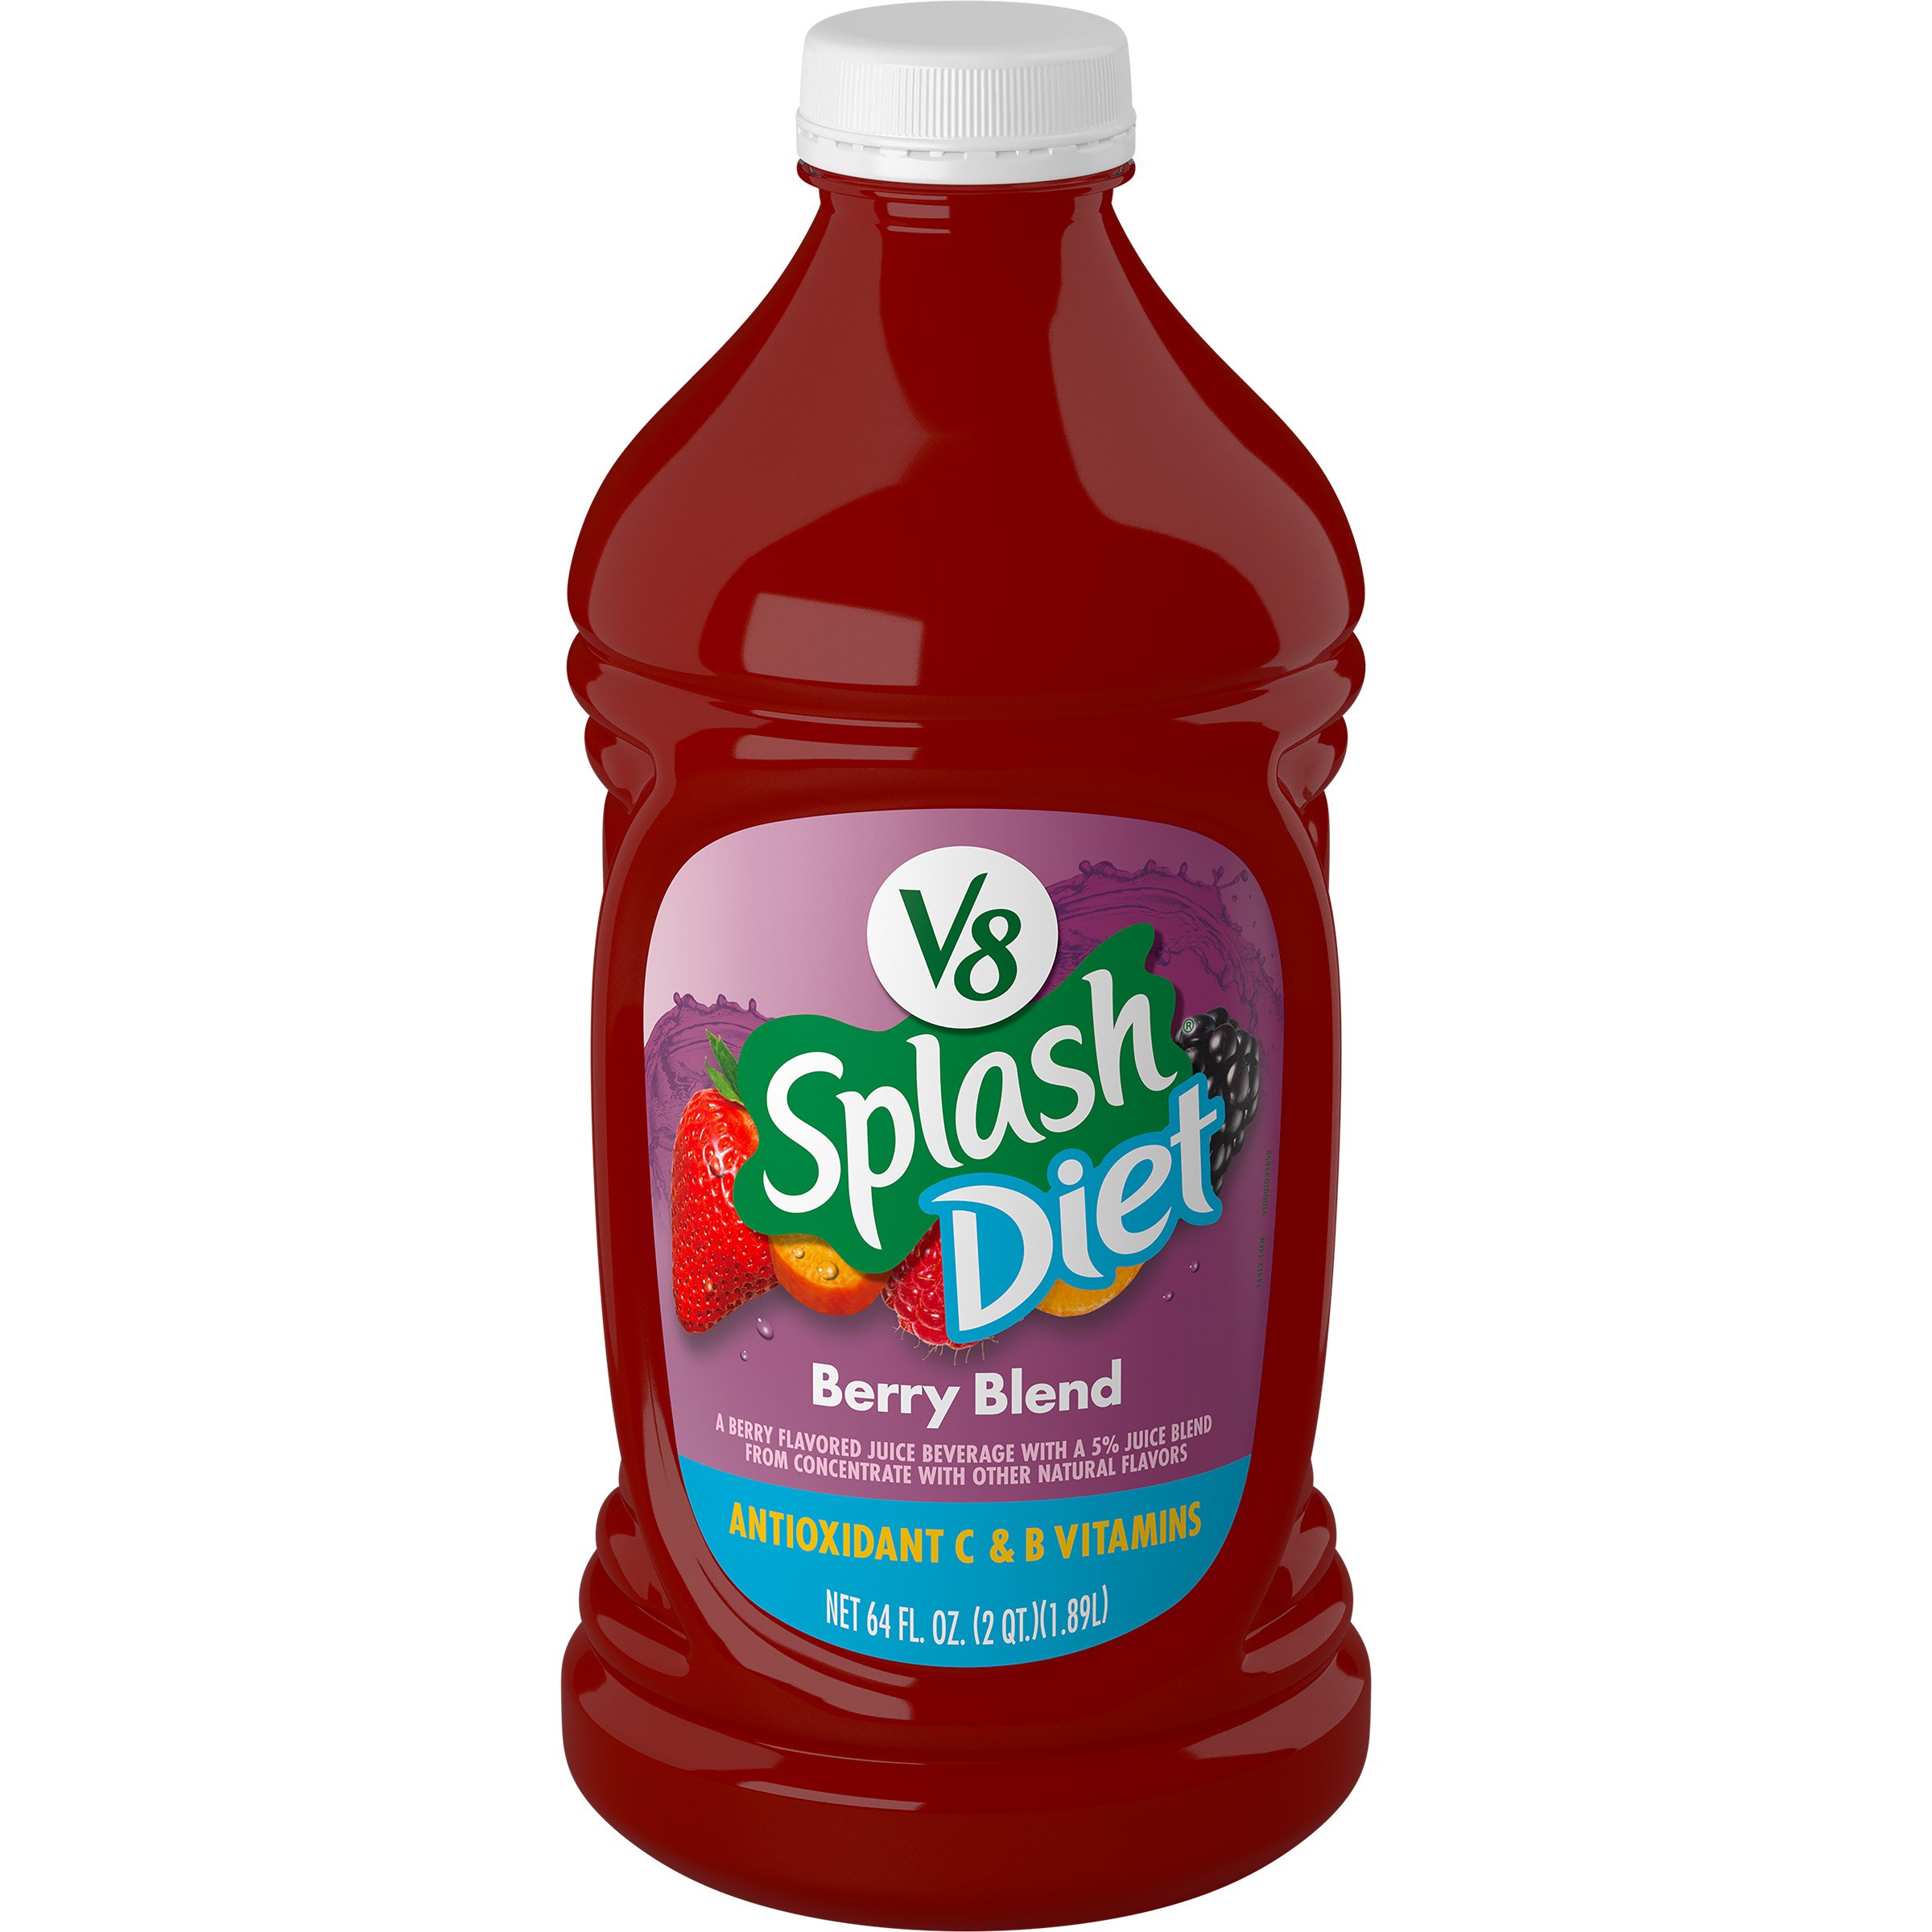 V8 Splash Diet Berry Blend Juice Beverage - Shop Juice at ...